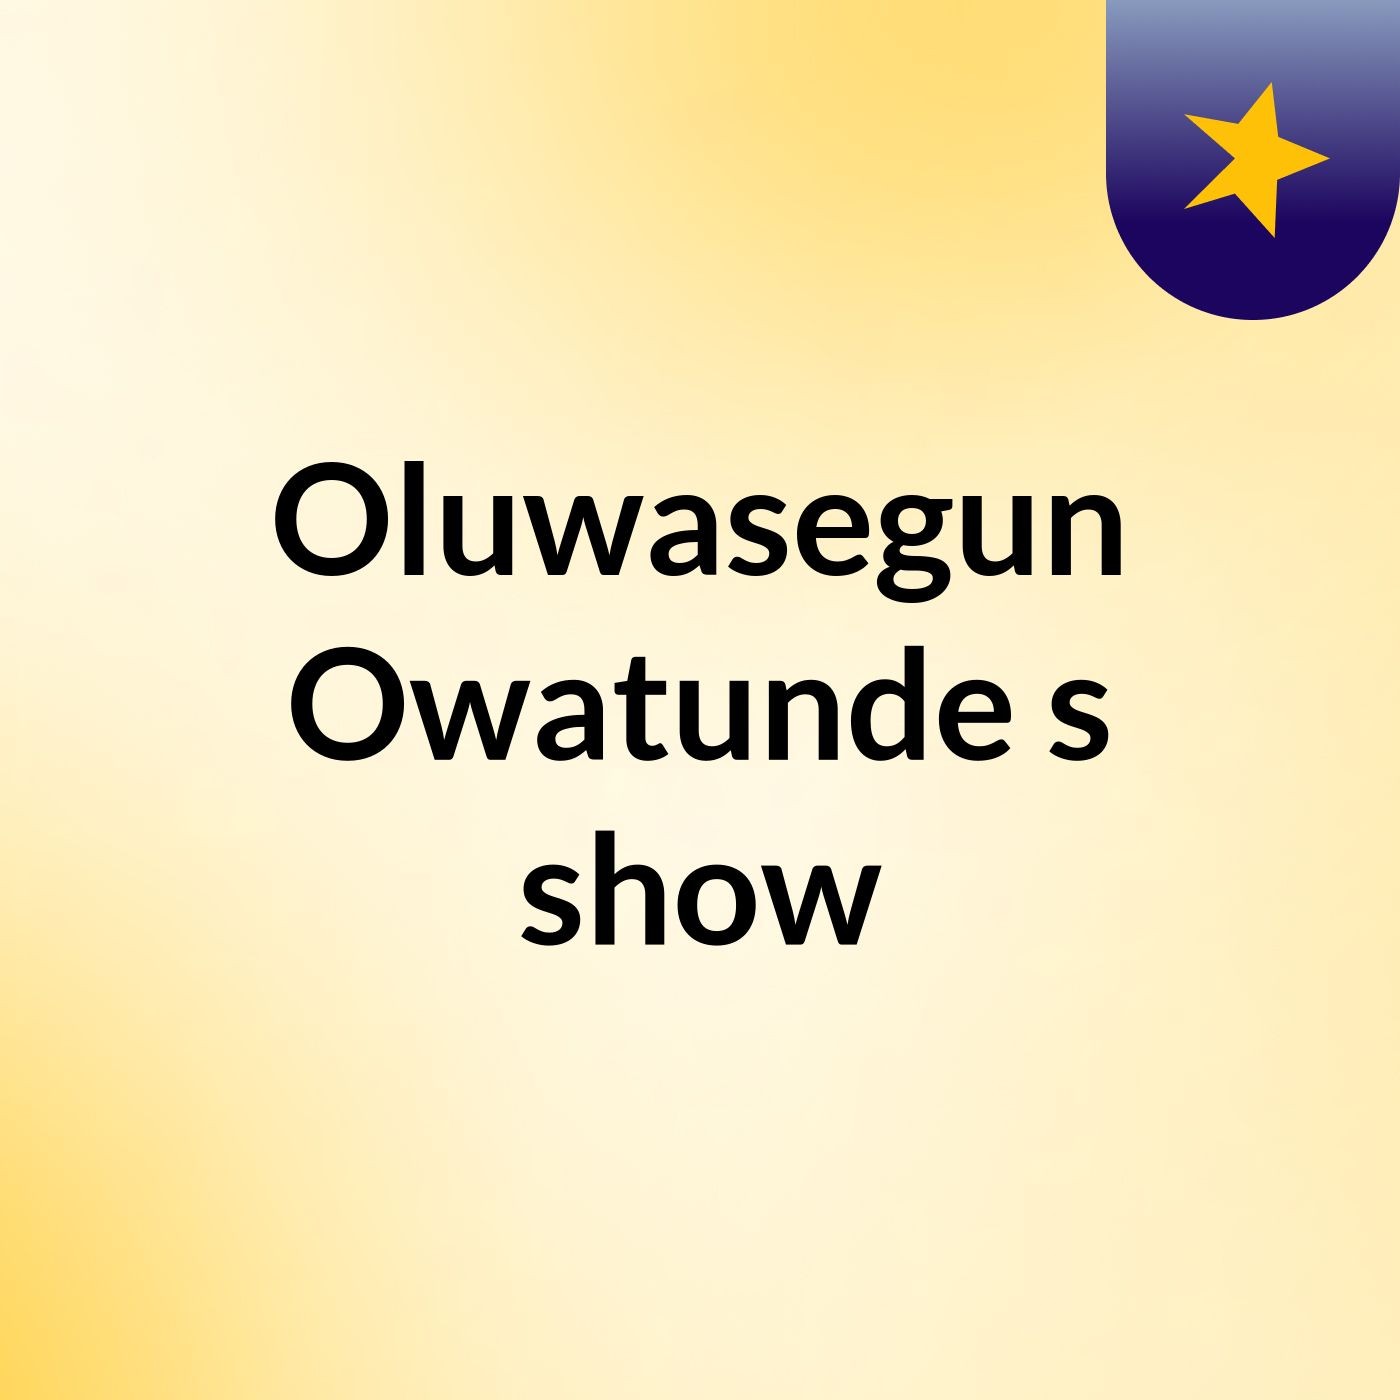 Episode 9 - Oluwasegun Owatunde's show